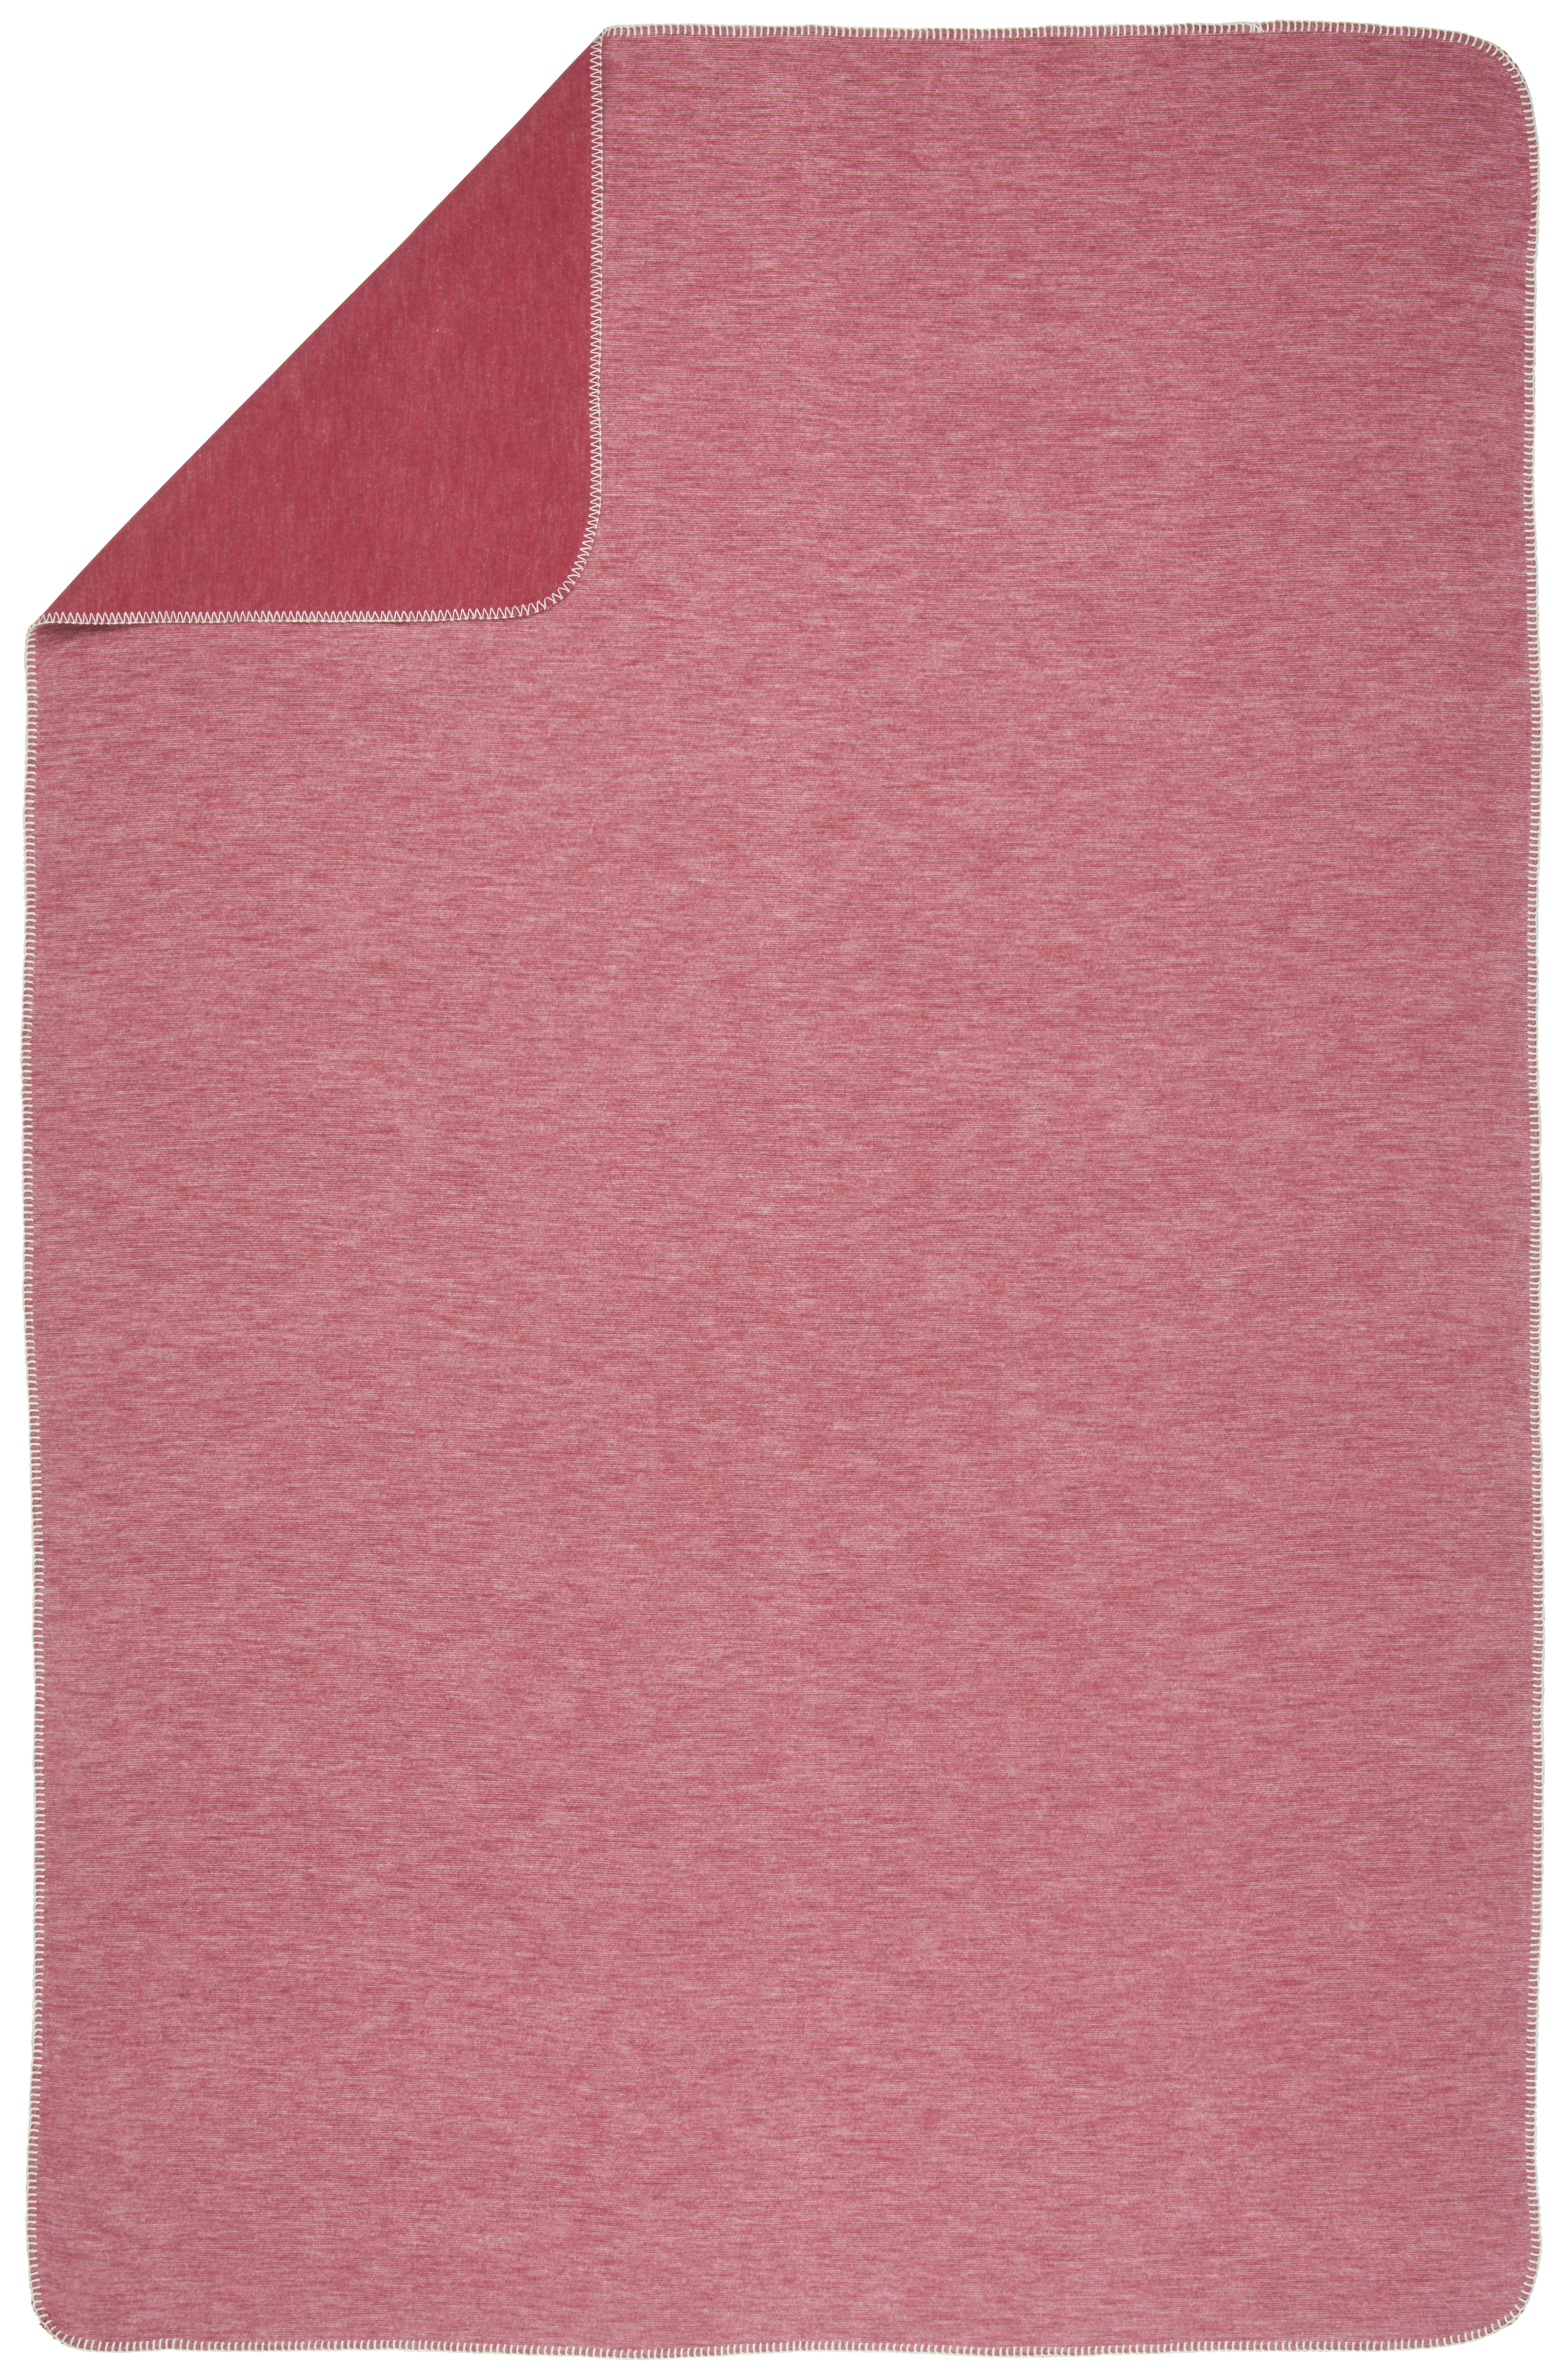 DEKA 140/200 cm  - crvena, Basics, tekstil (140/200cm) - Bio:Vio